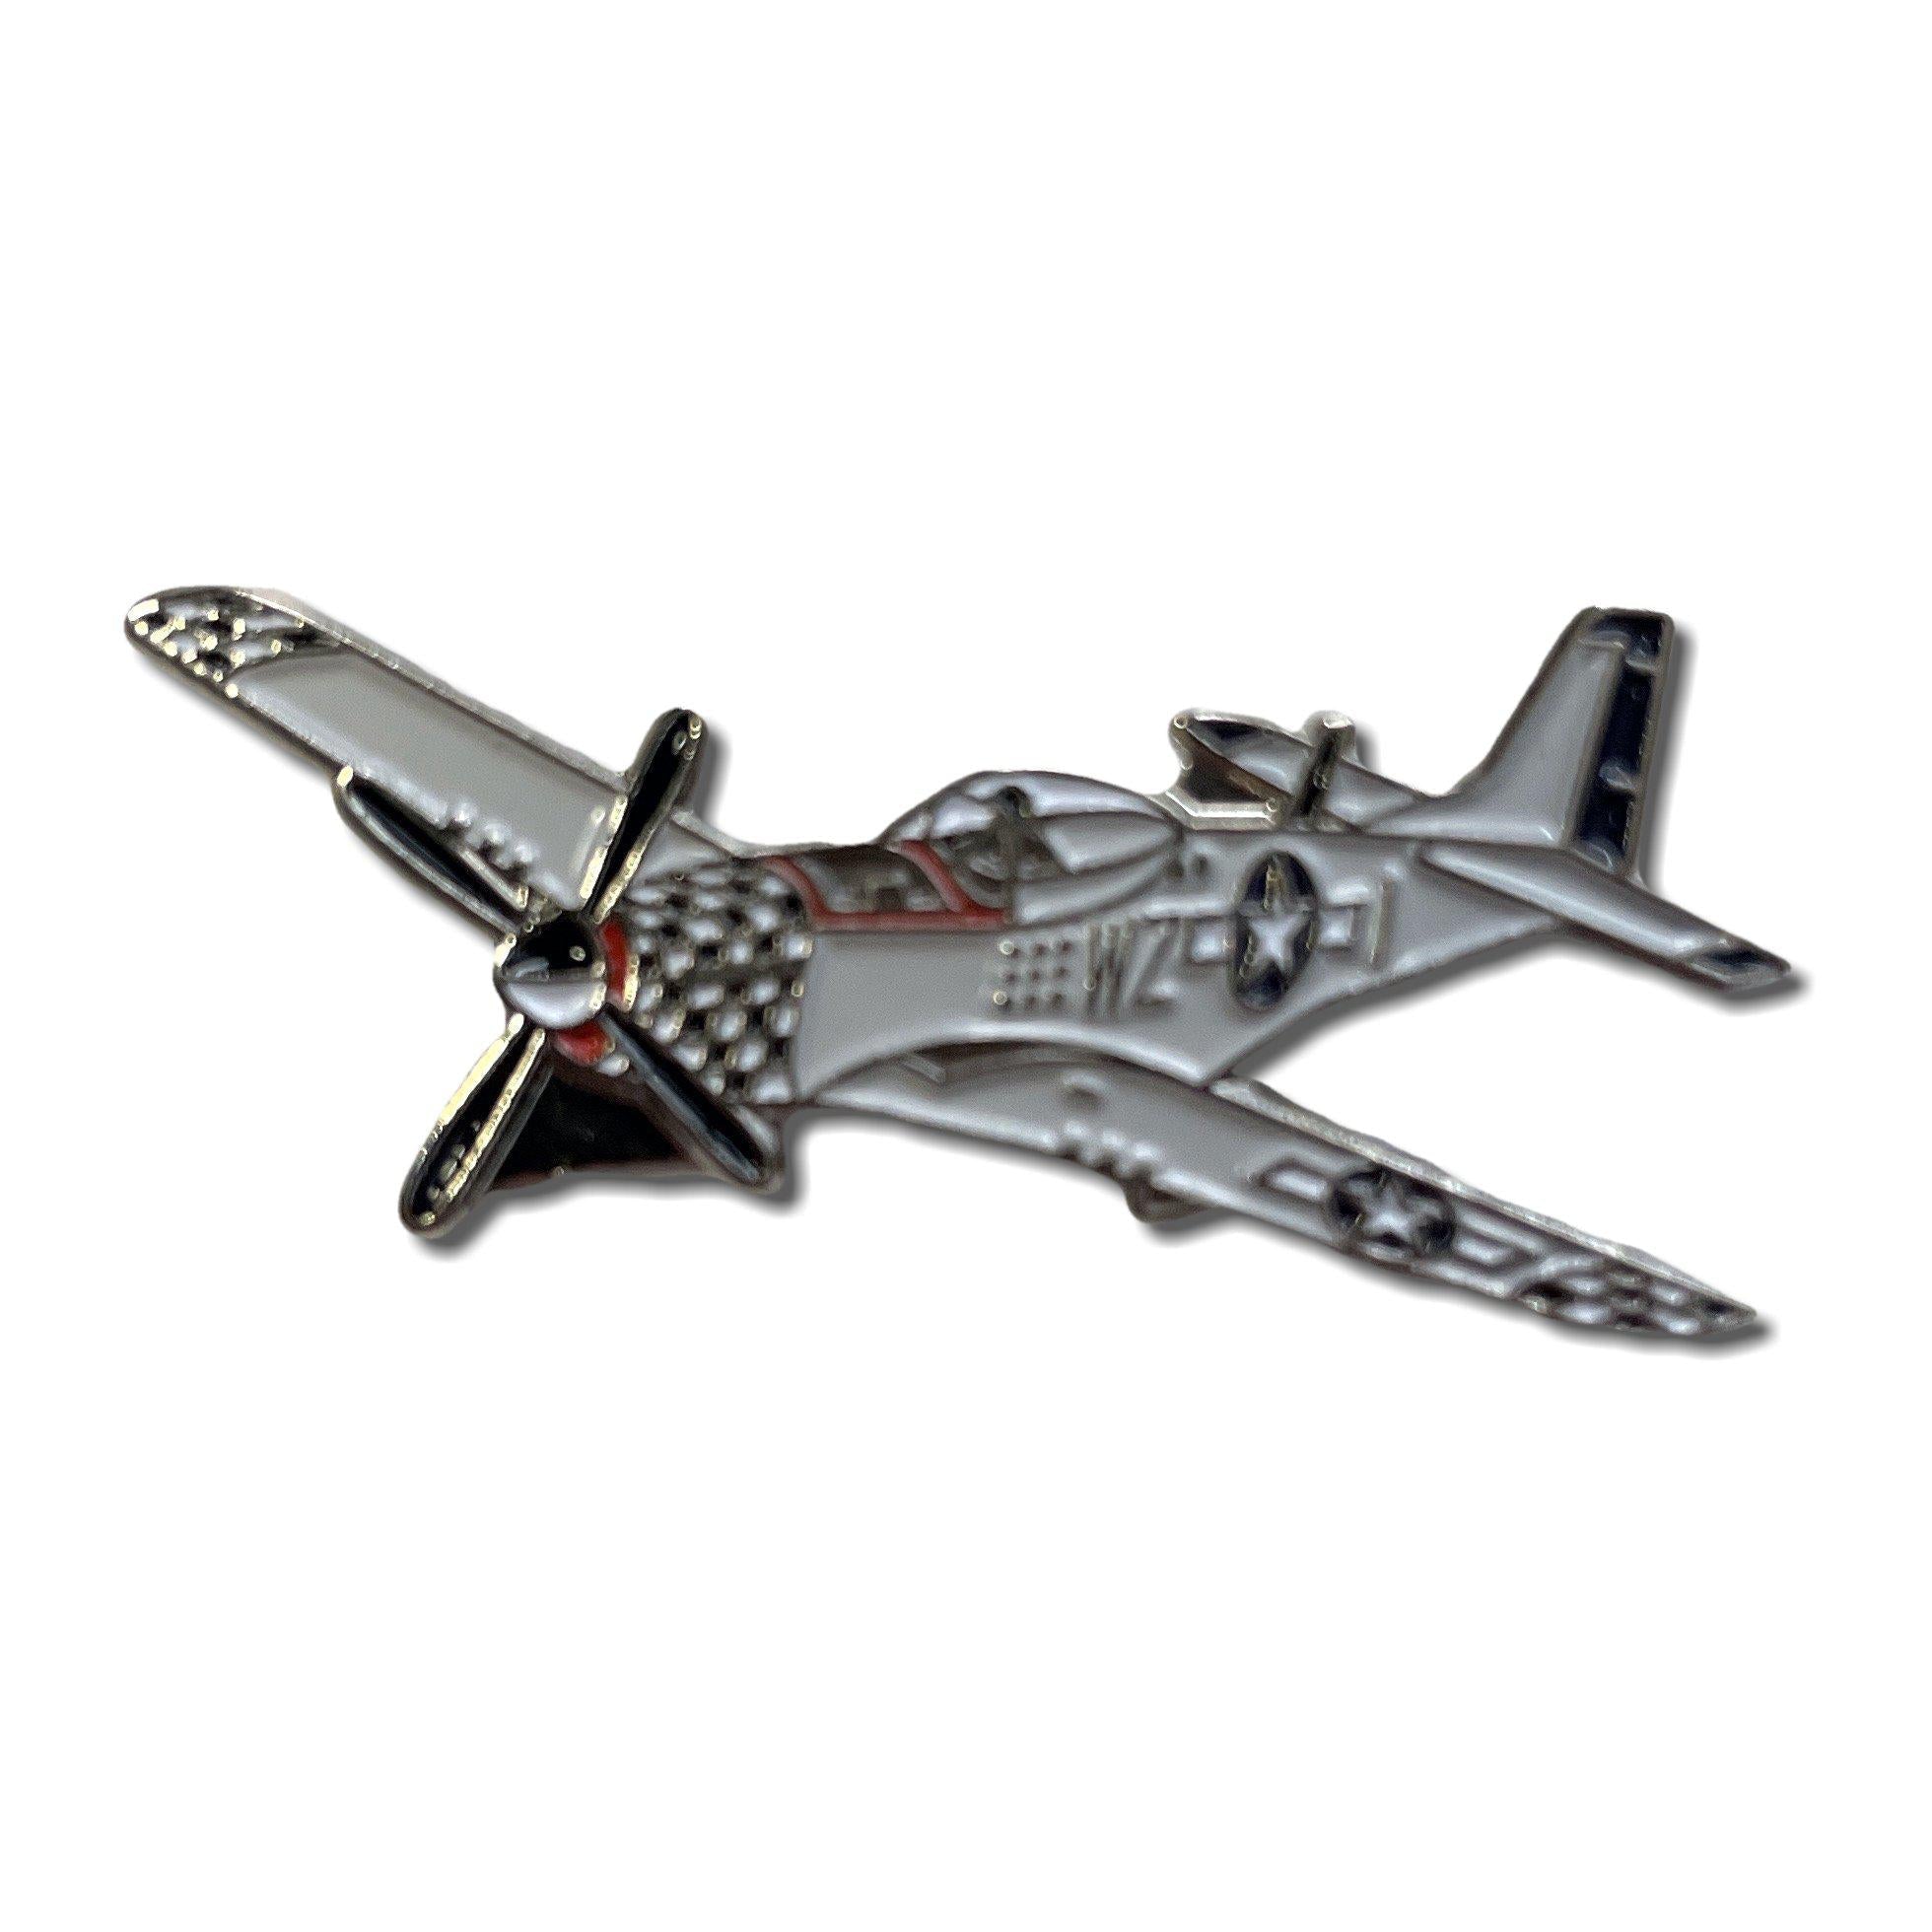 Metal & Enamel P51 Mustang Plane Pin Badge with Secure Locking